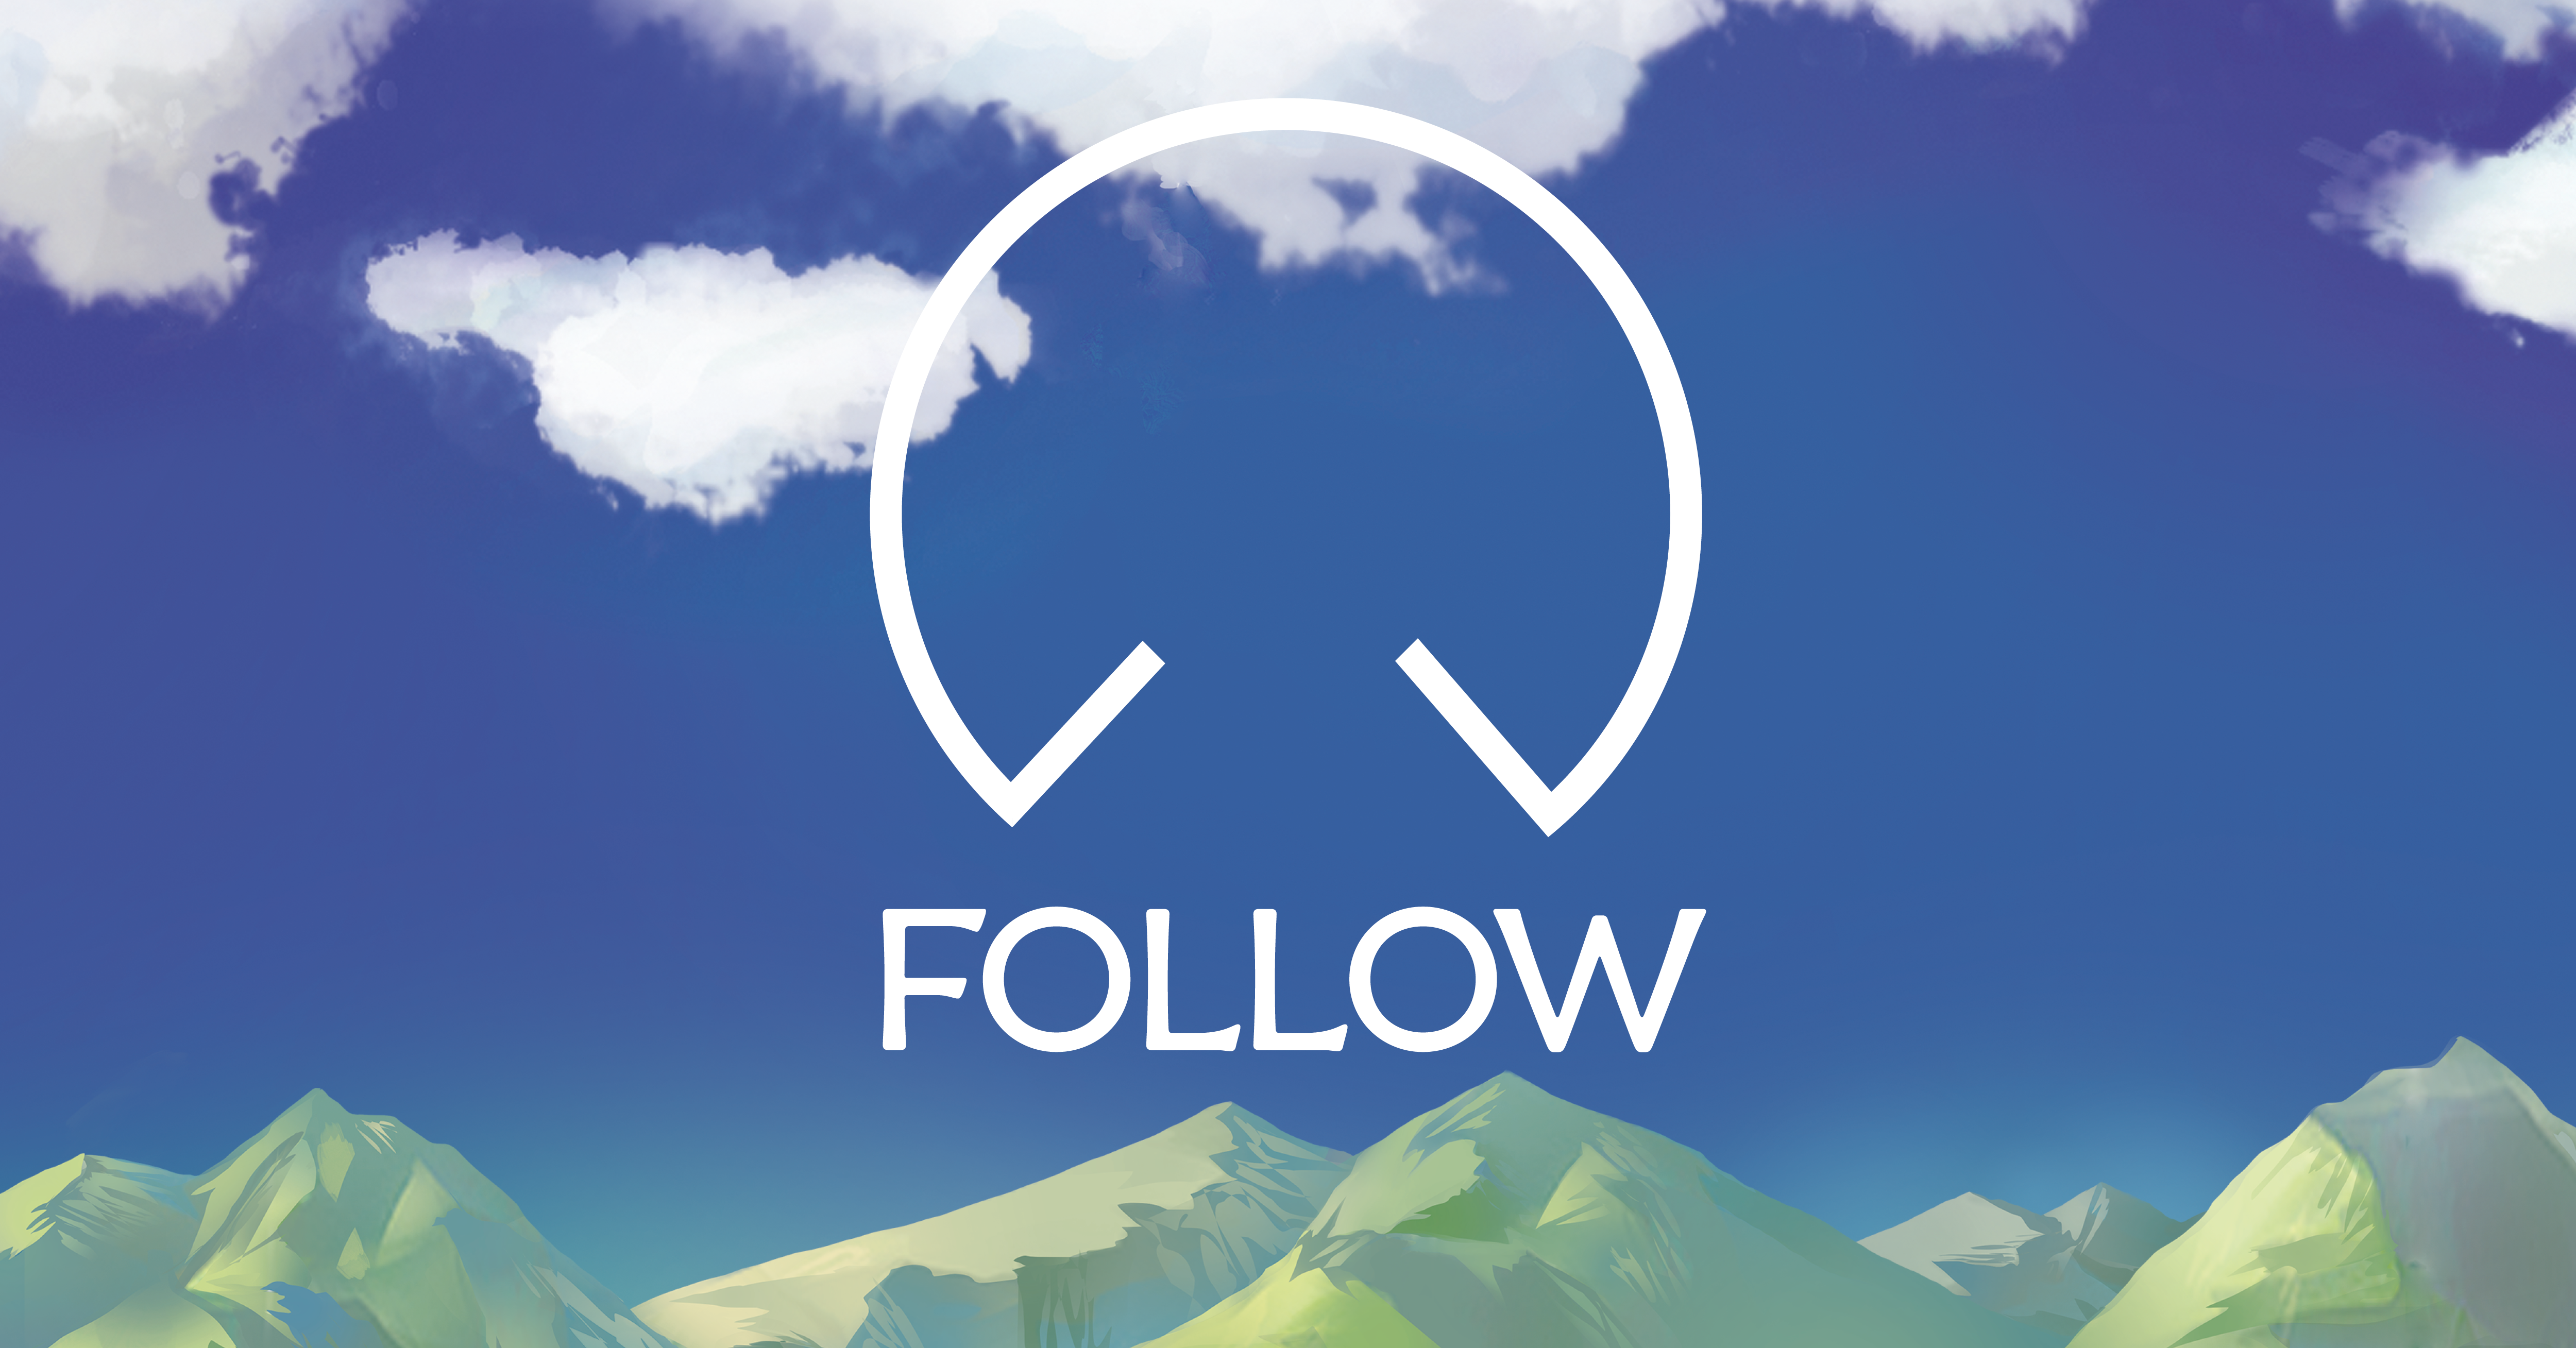 Follow